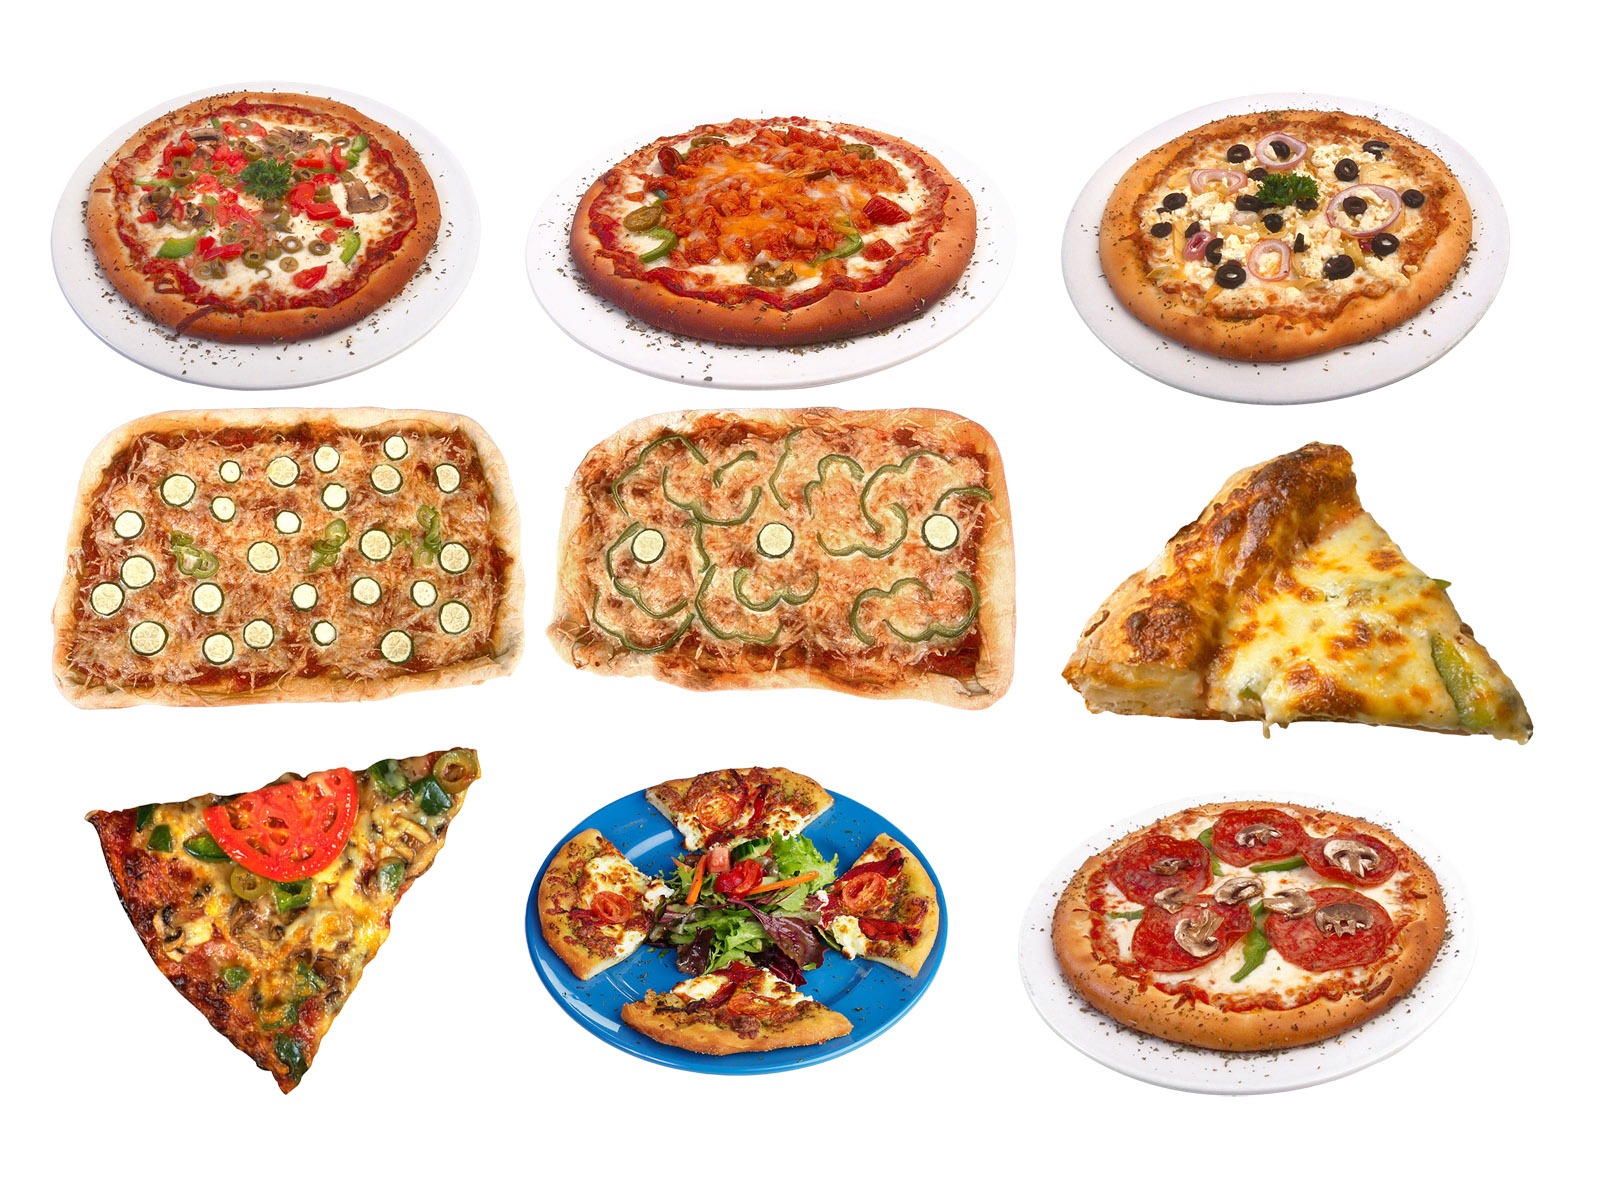 Fondos de pizzerías de Alimentos (3) #17 - 1600x1200